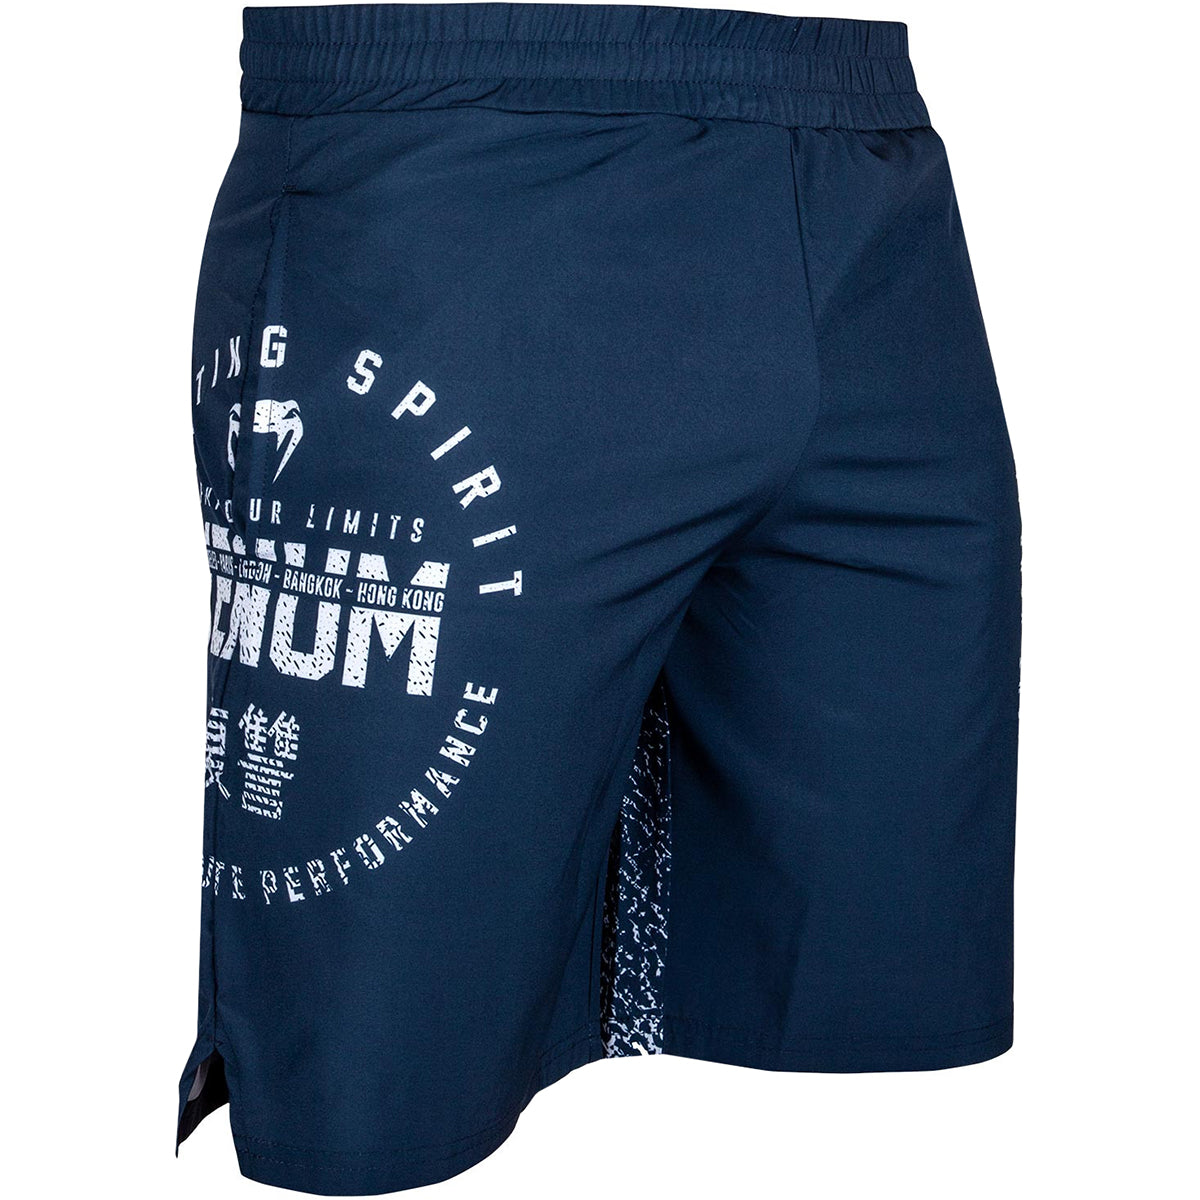 Venum Signature Training Shorts - Navy Blue/White Venum